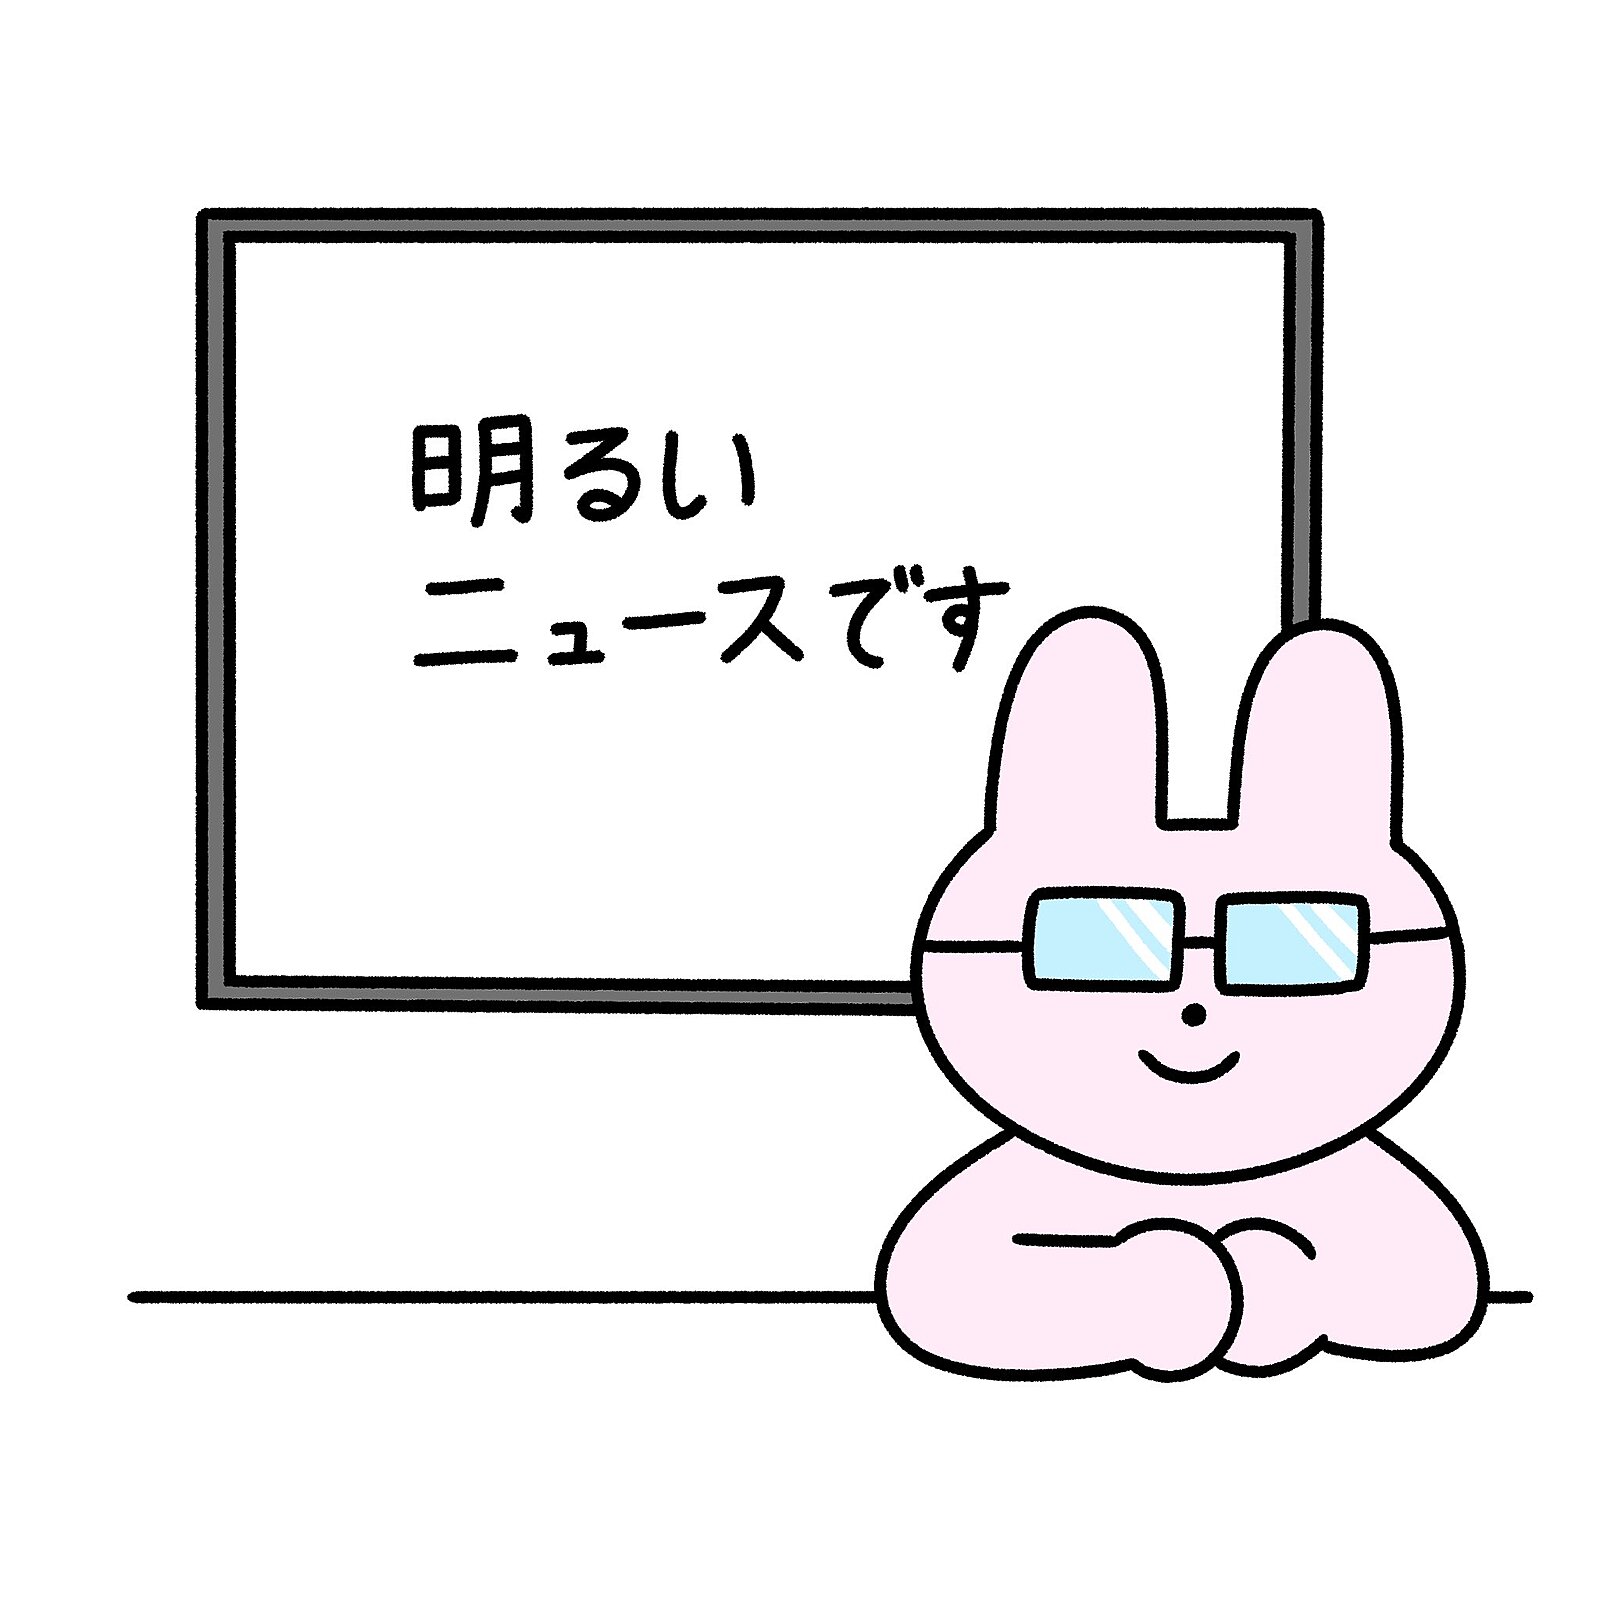 【ガチ朝活】1/15(月)7時博多 ポジティブニュースを語ろう会